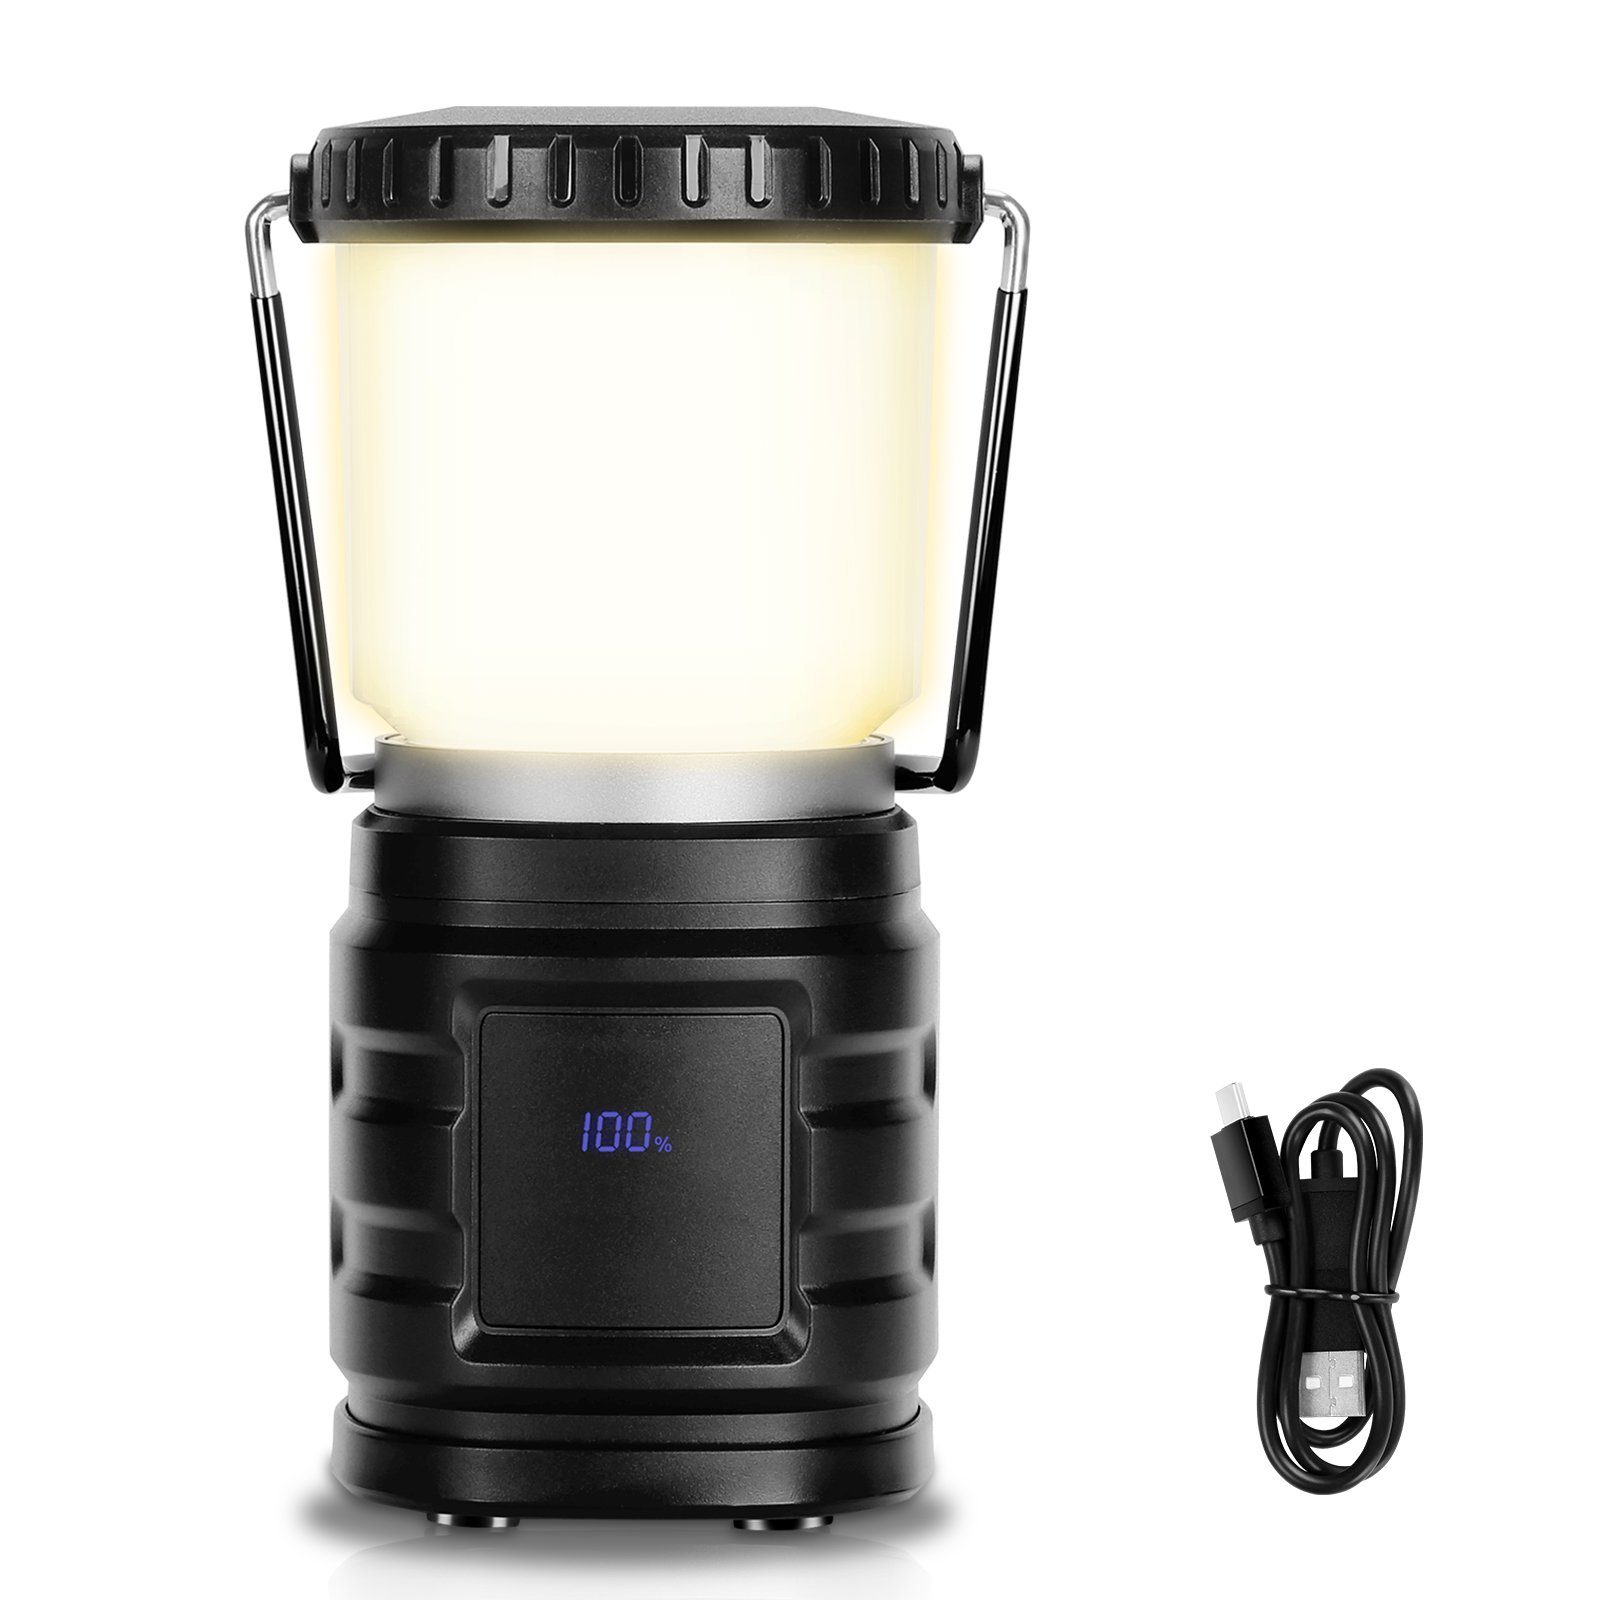 Akku IP65 LED Gartenleuchte Zeltlampe Campinglampe Outdoor Lospitch Campingleuchte Laterne LED